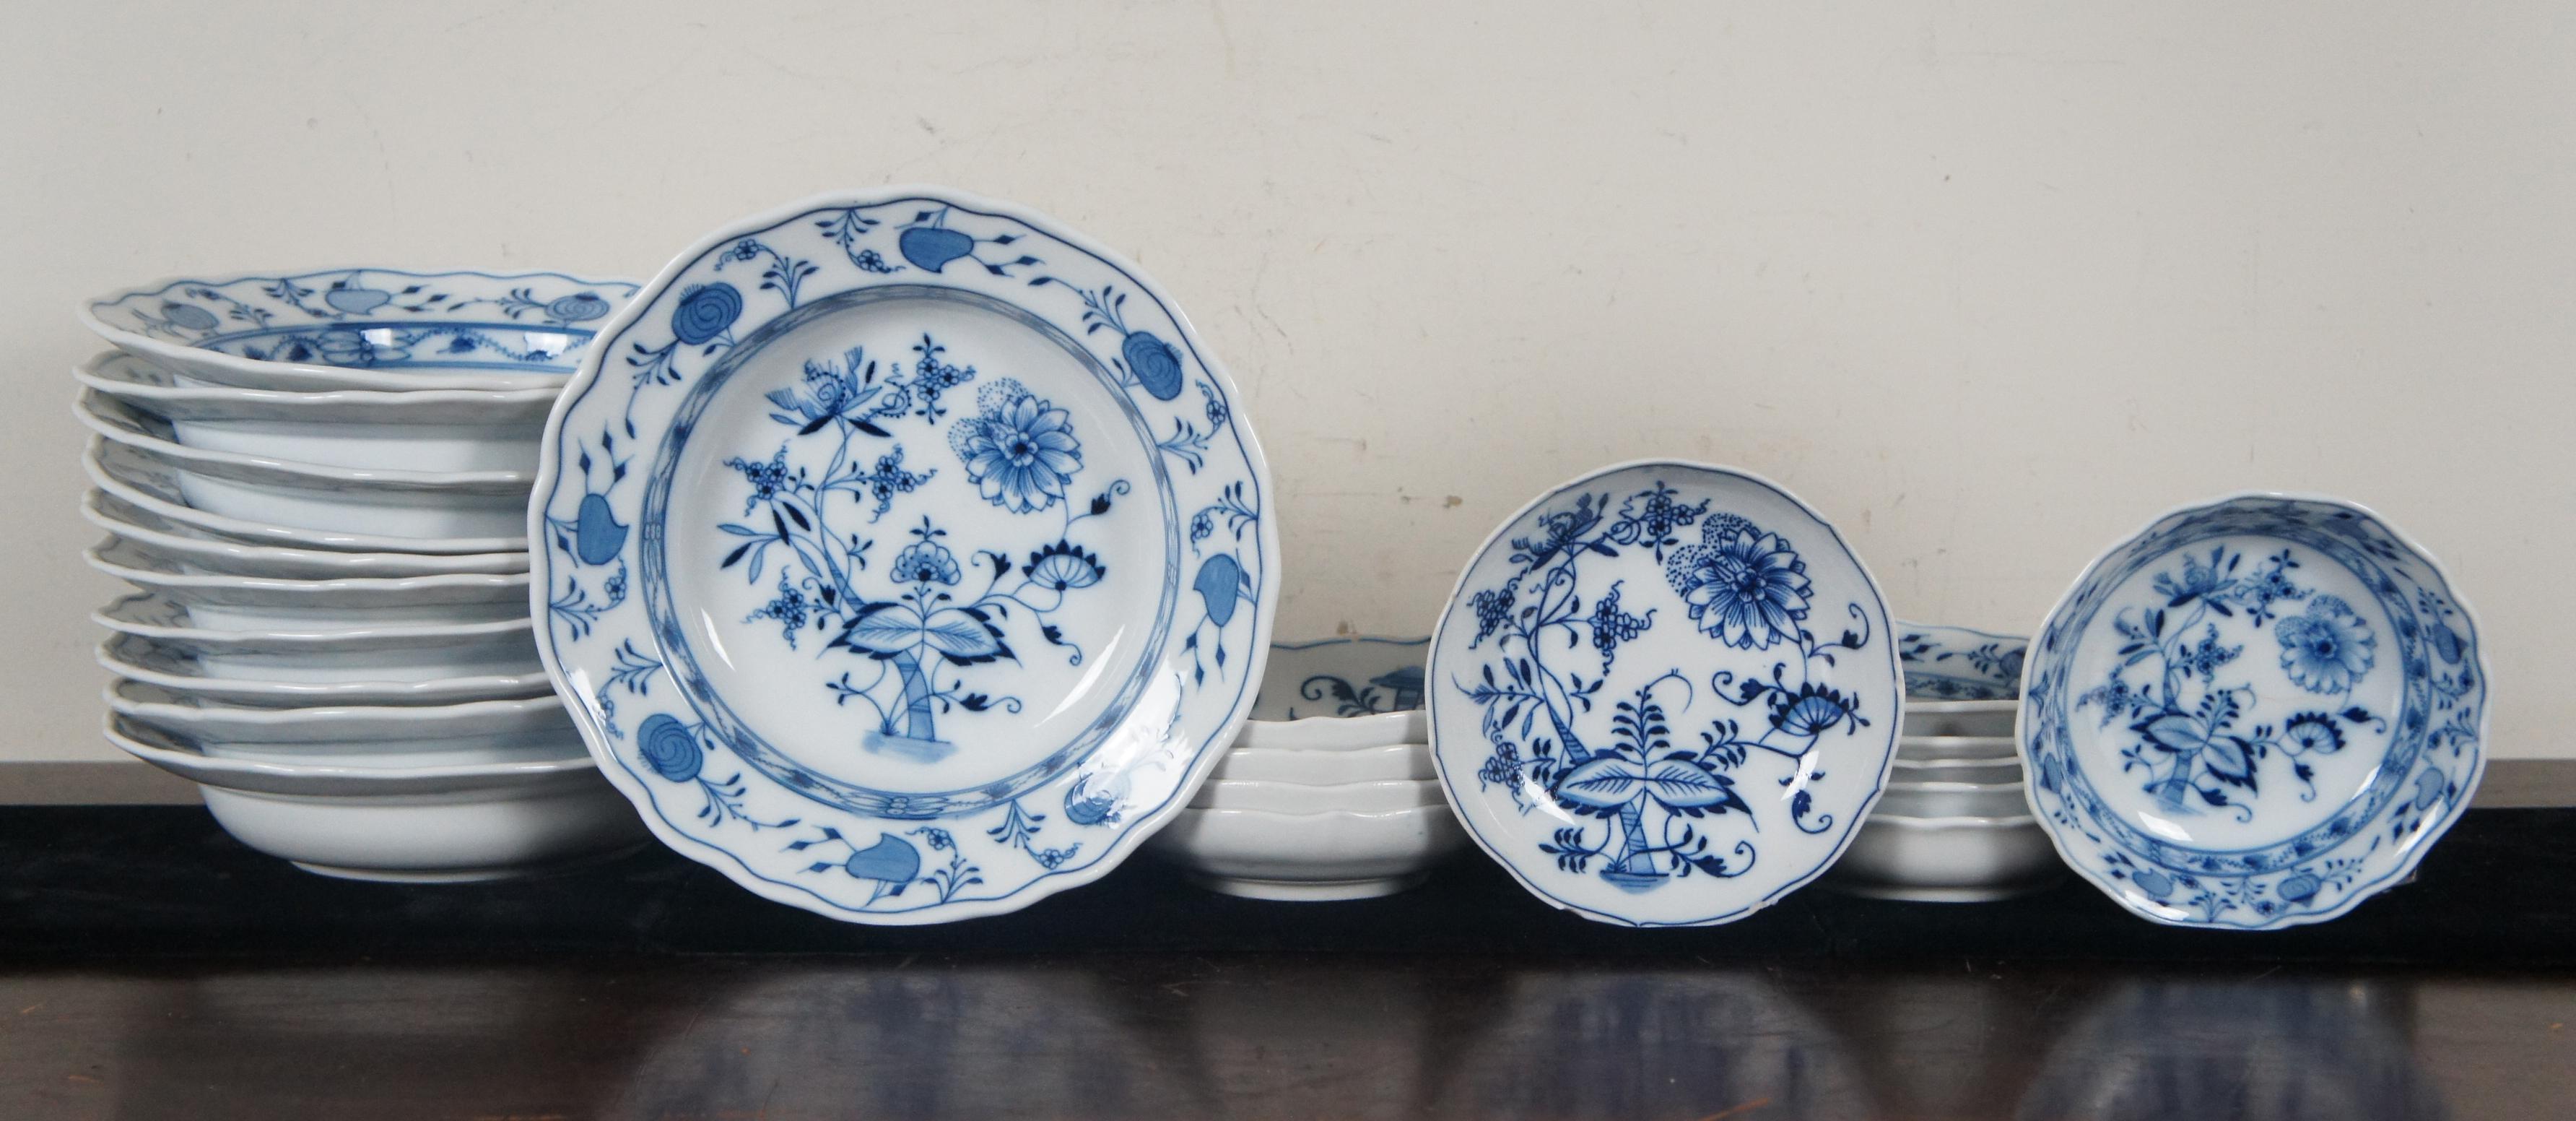 blue onion china markings